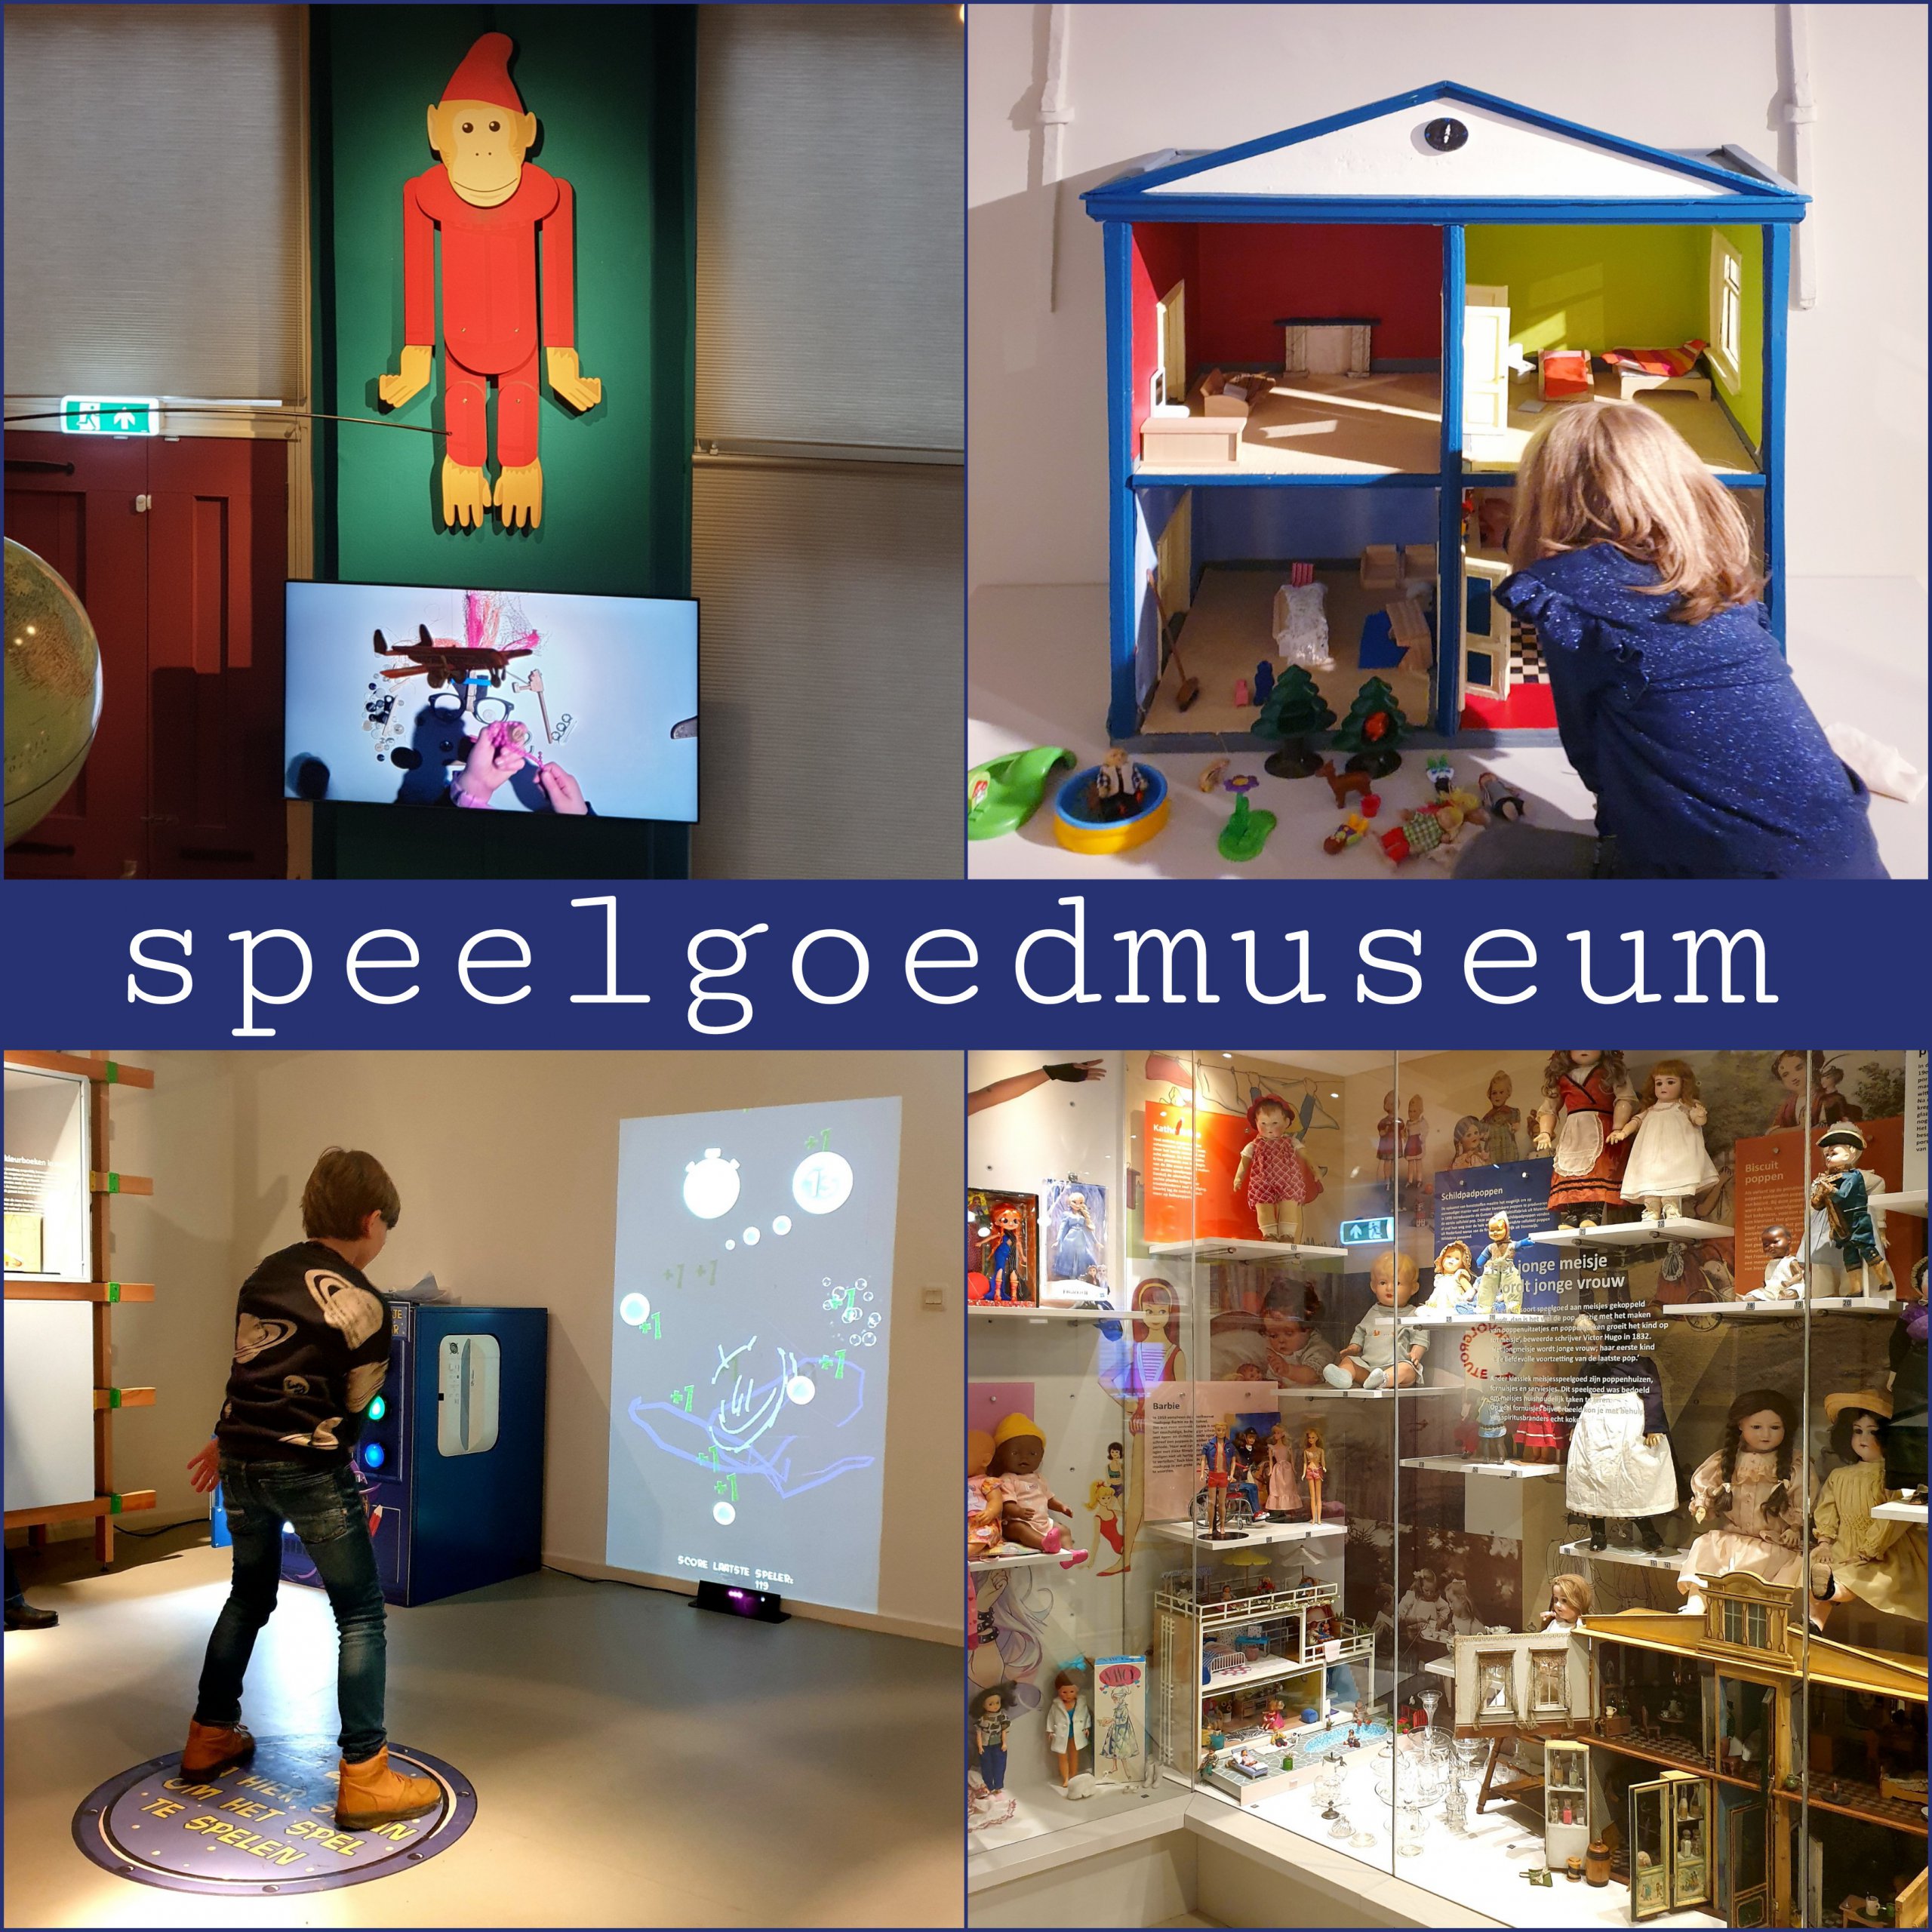 Speelgoedmuseum in Deventer: uitje met speelgoed van vroeger en nu